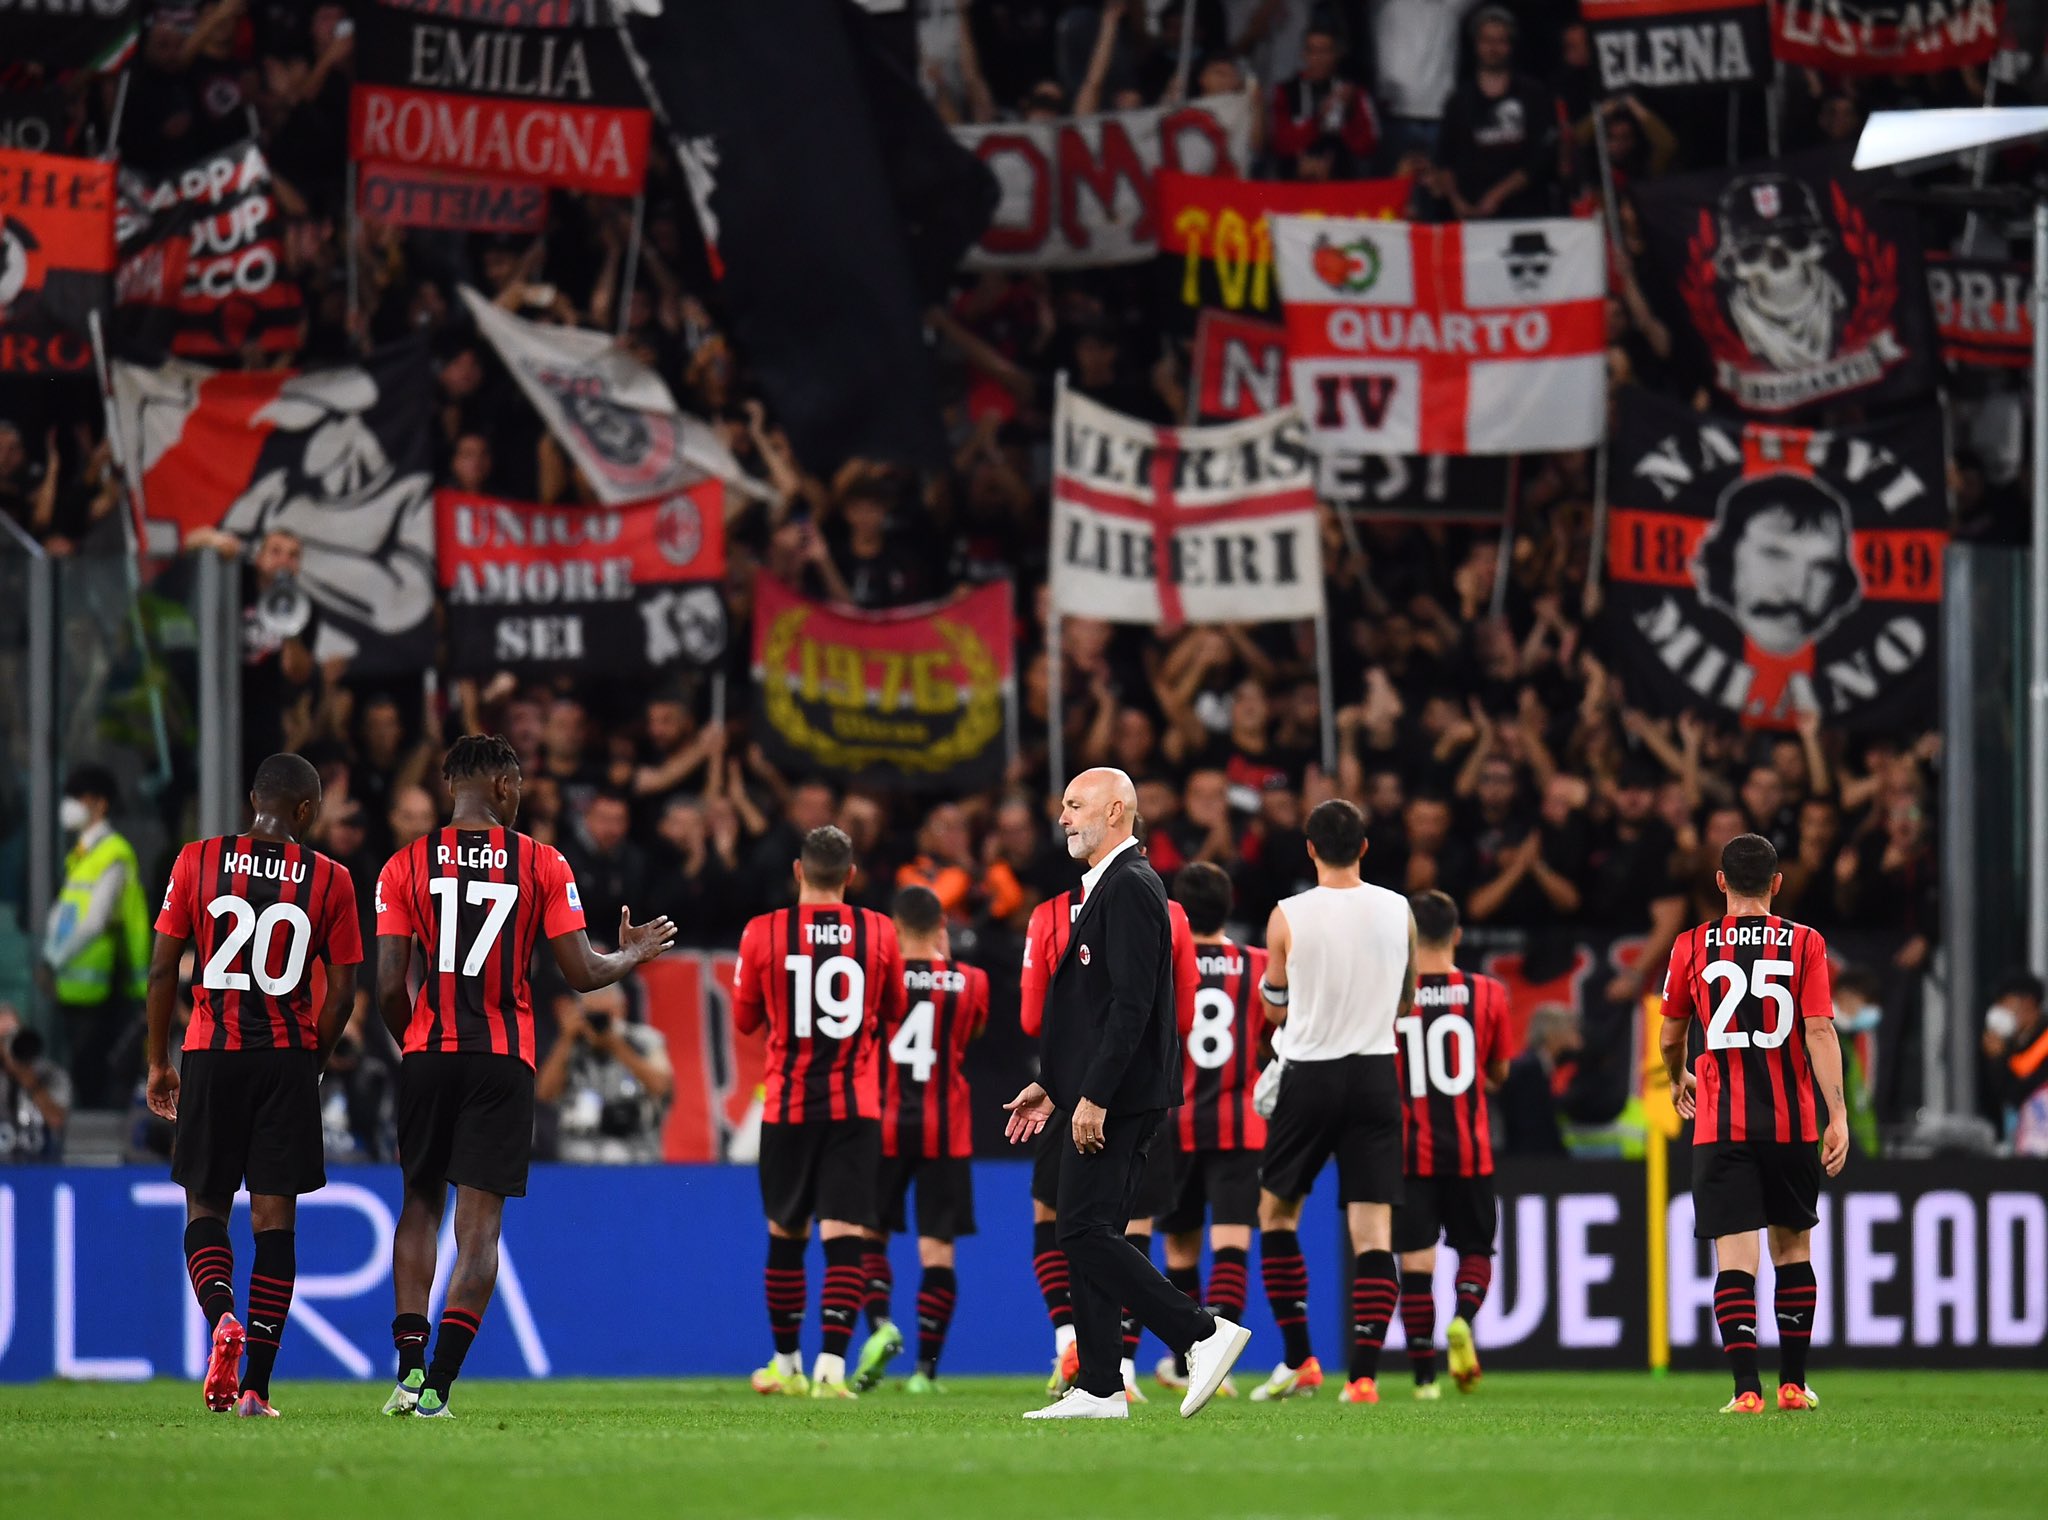 Milan: bene contro la Juve, ora testa al Venezia